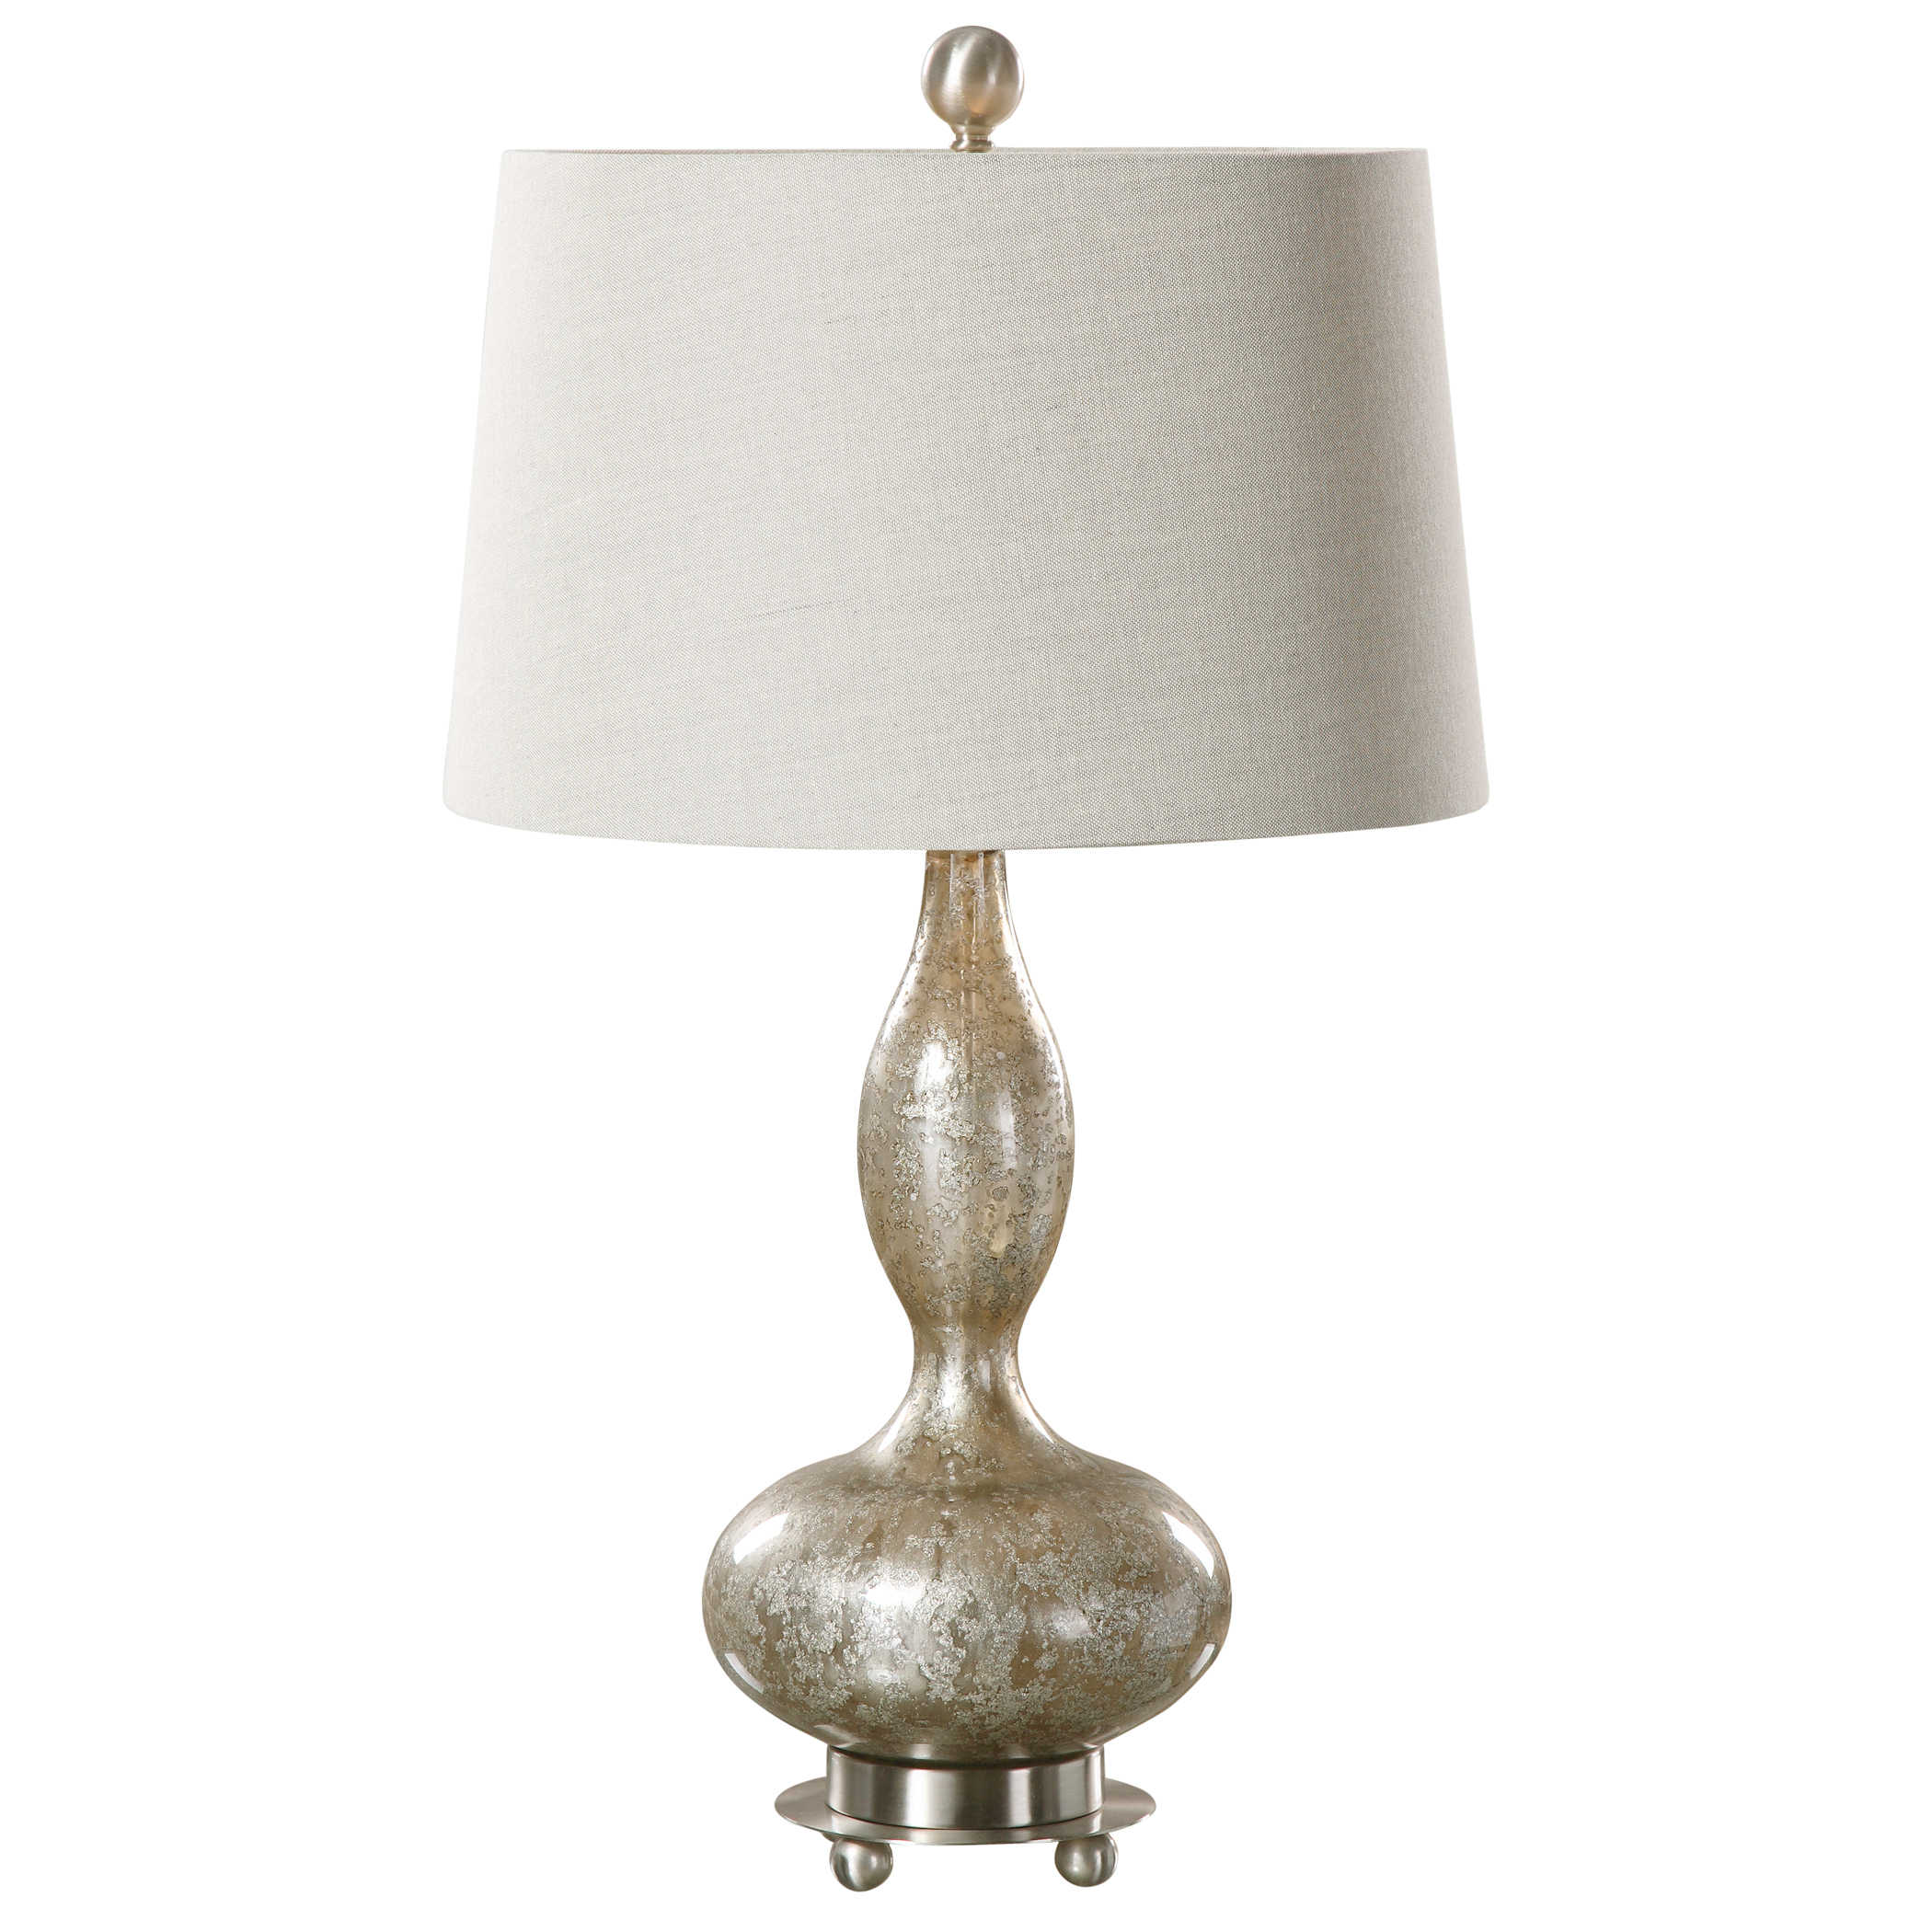 Настольная лампа VERCANA TABLE LAMP 27014 Uttermost США